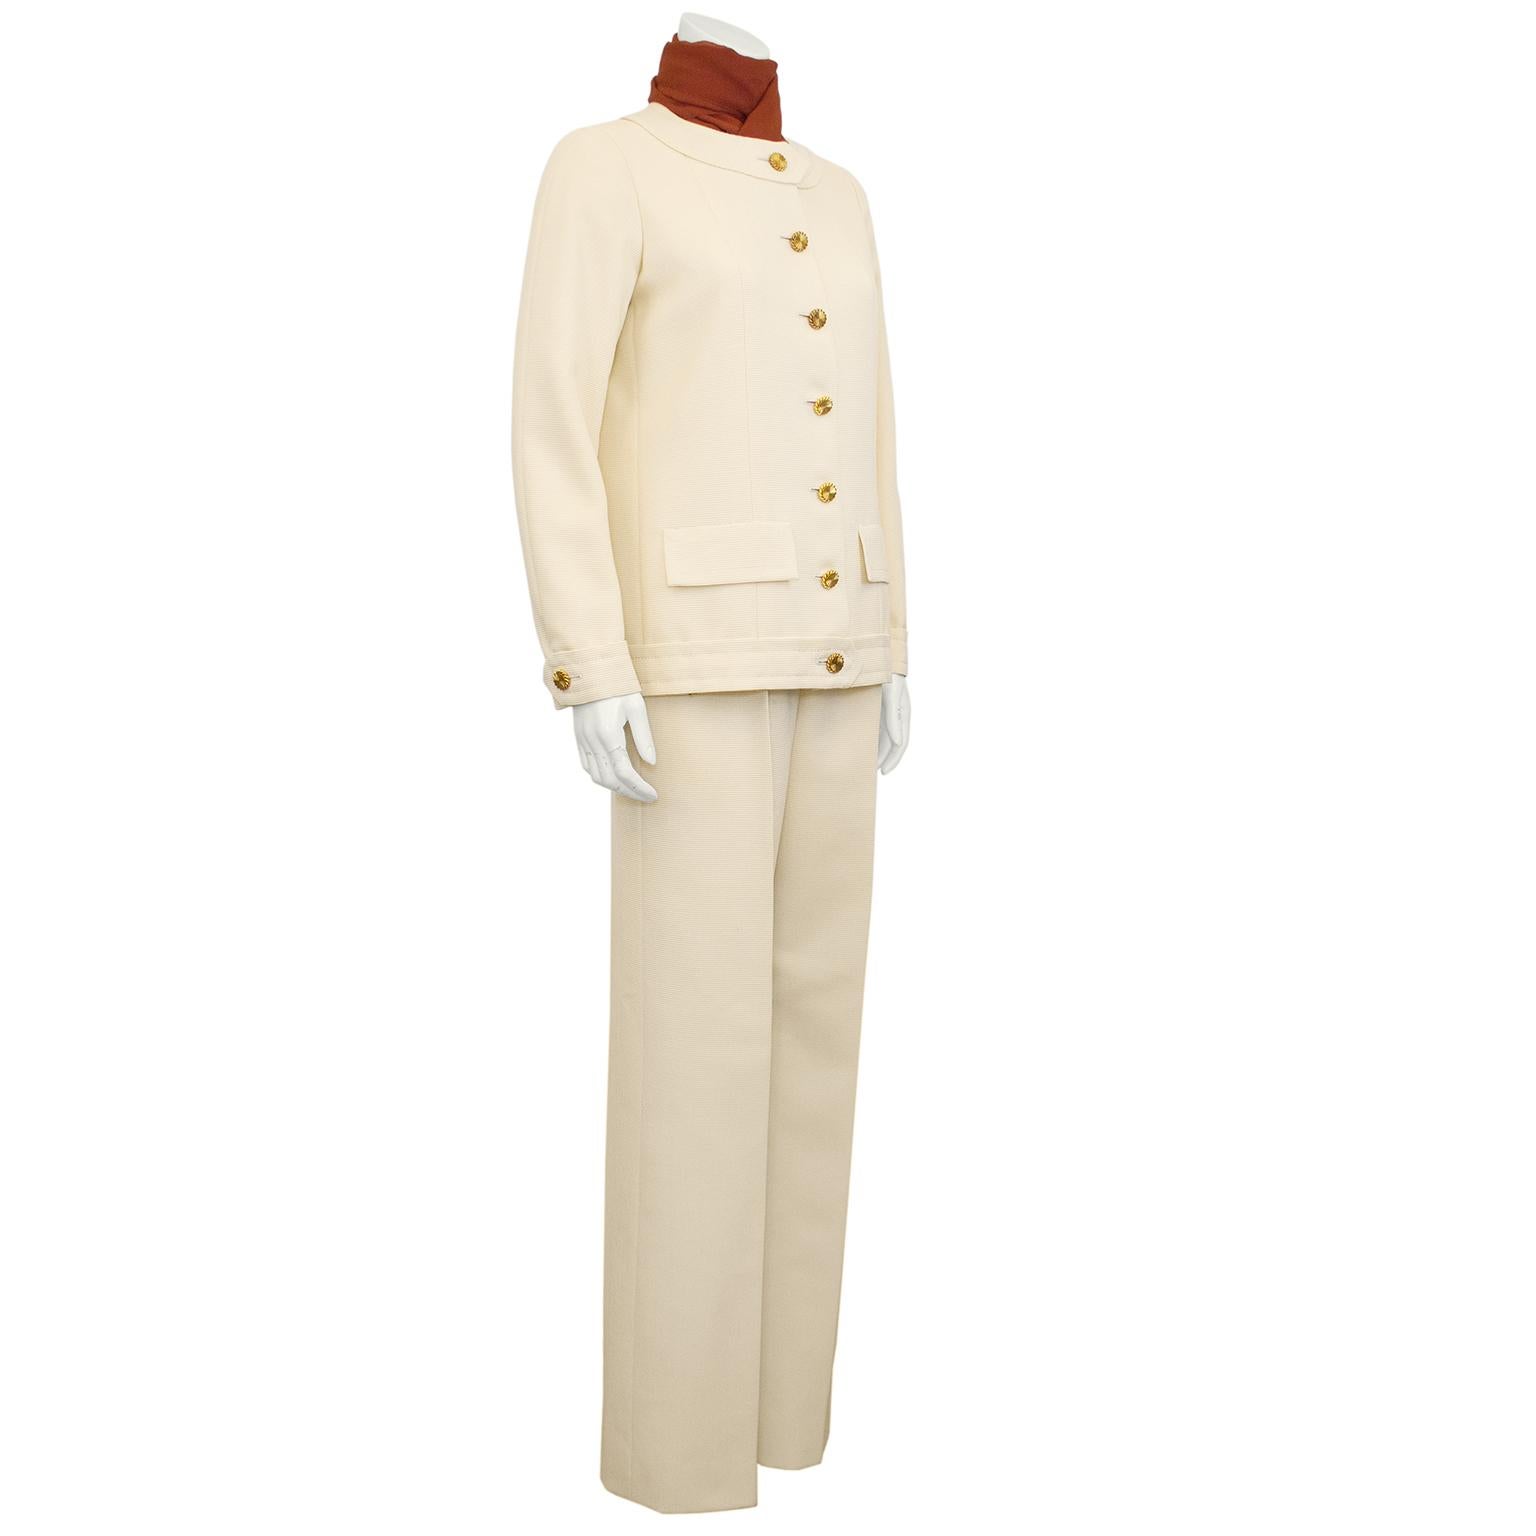 Incroyable tailleur pantalon Chanel Haute Couture en laine crème du début des années 1980. Veste sans col avec poches à faux rabats. Jolis boutons ronds en métal doré avec un bord torsadé. Doublure en soie crème avec la chaîne iconique de Chanel à